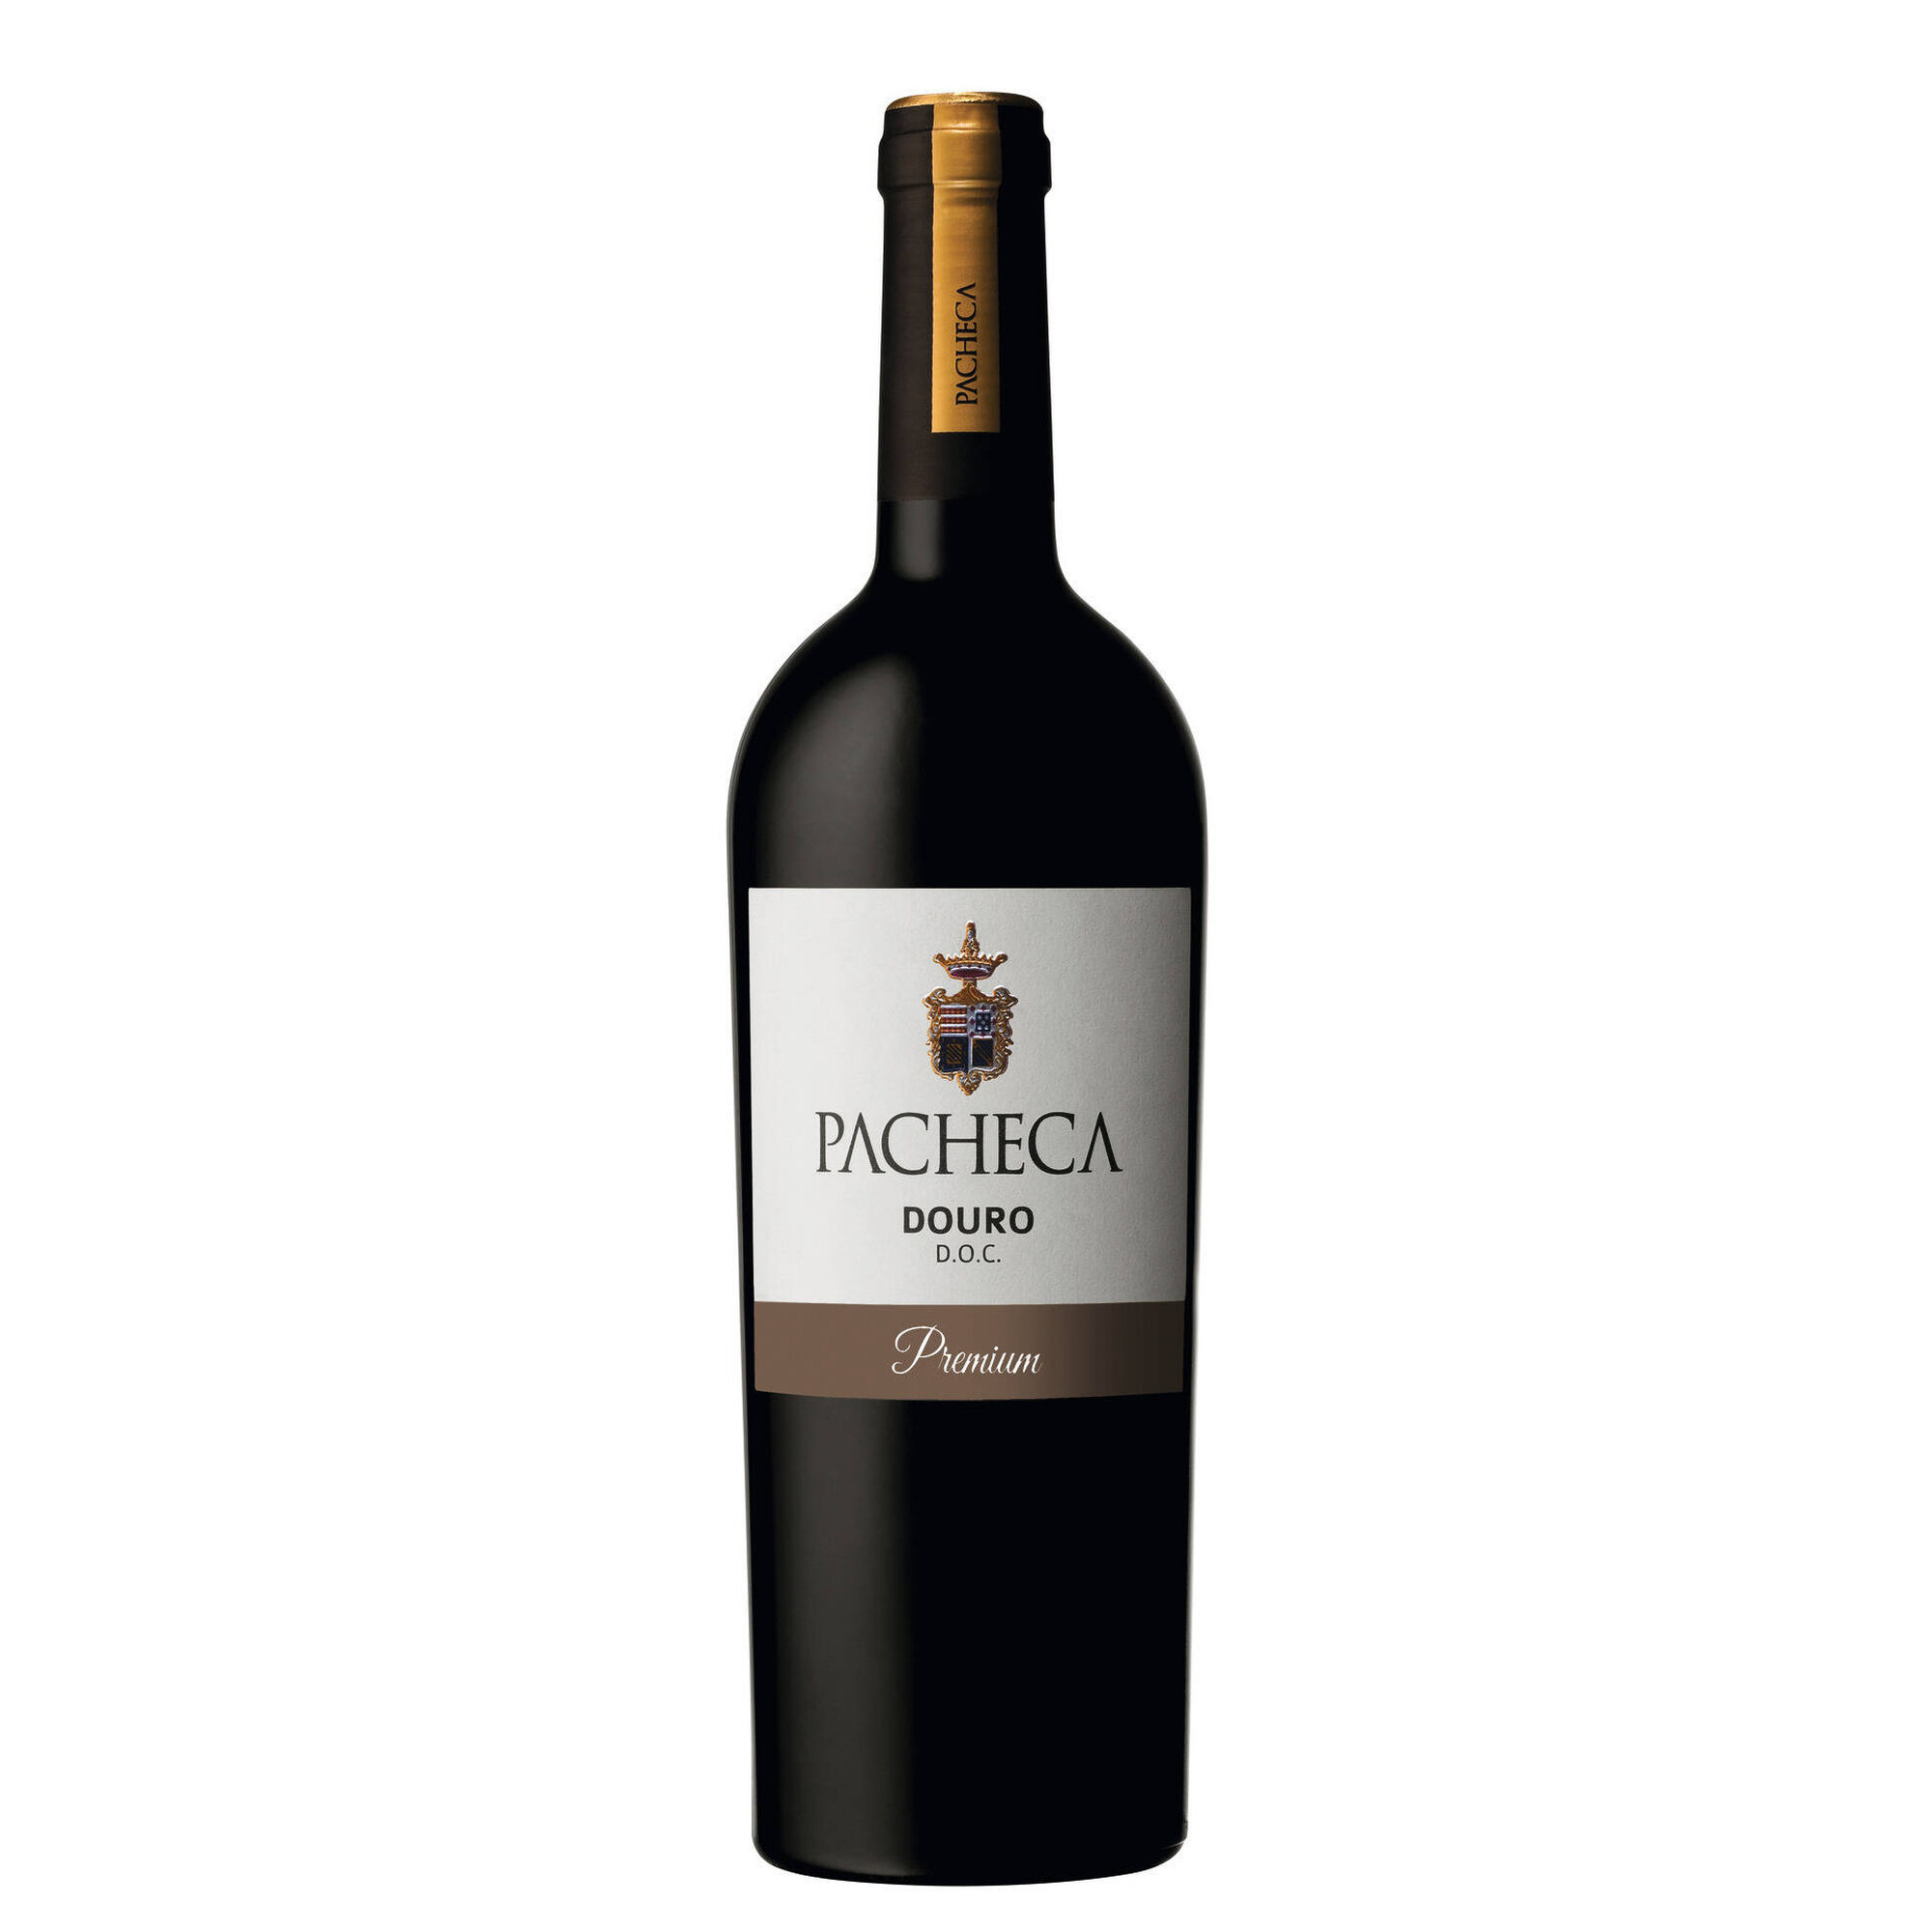 Pacheca Premium DOC Douro Vinho Tinto